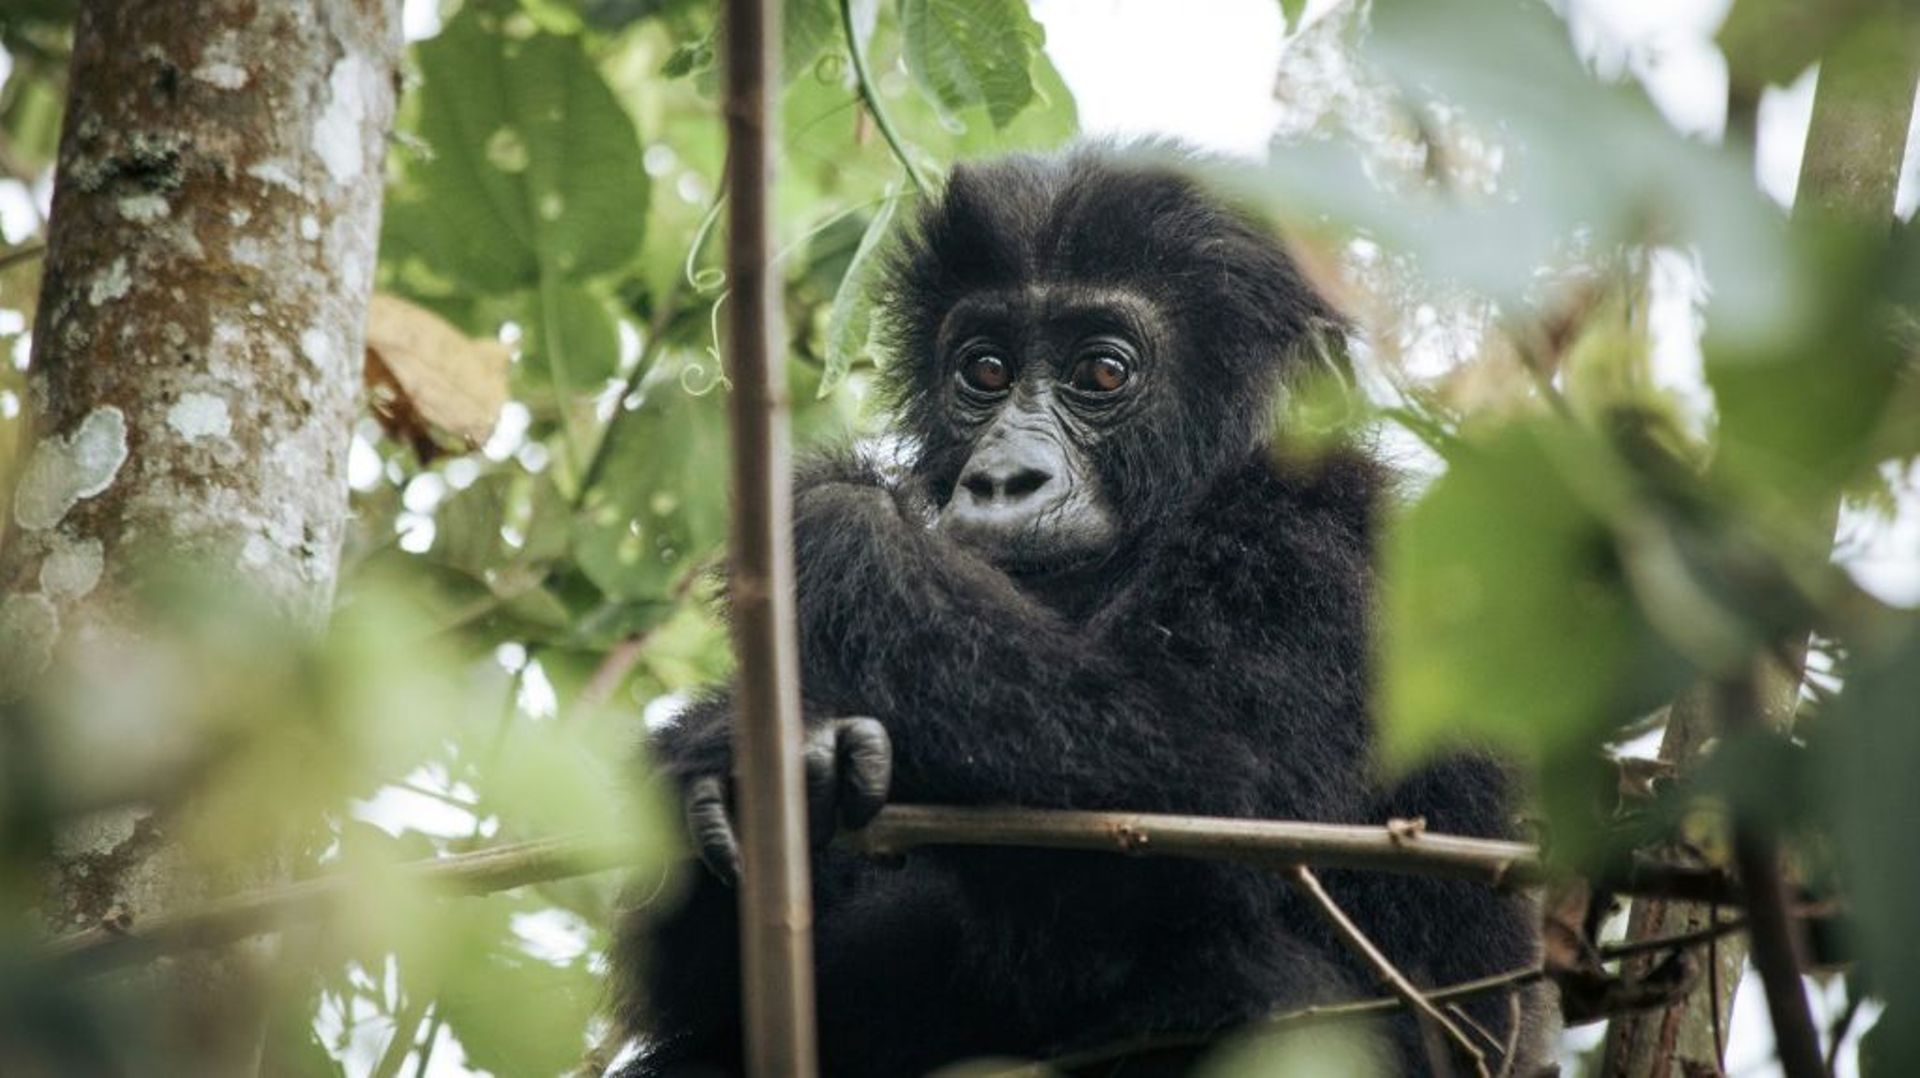 Un bébé gorille est né en milieu naturel au Gabon de deux parents issus de parcs zoologiques français et britannique